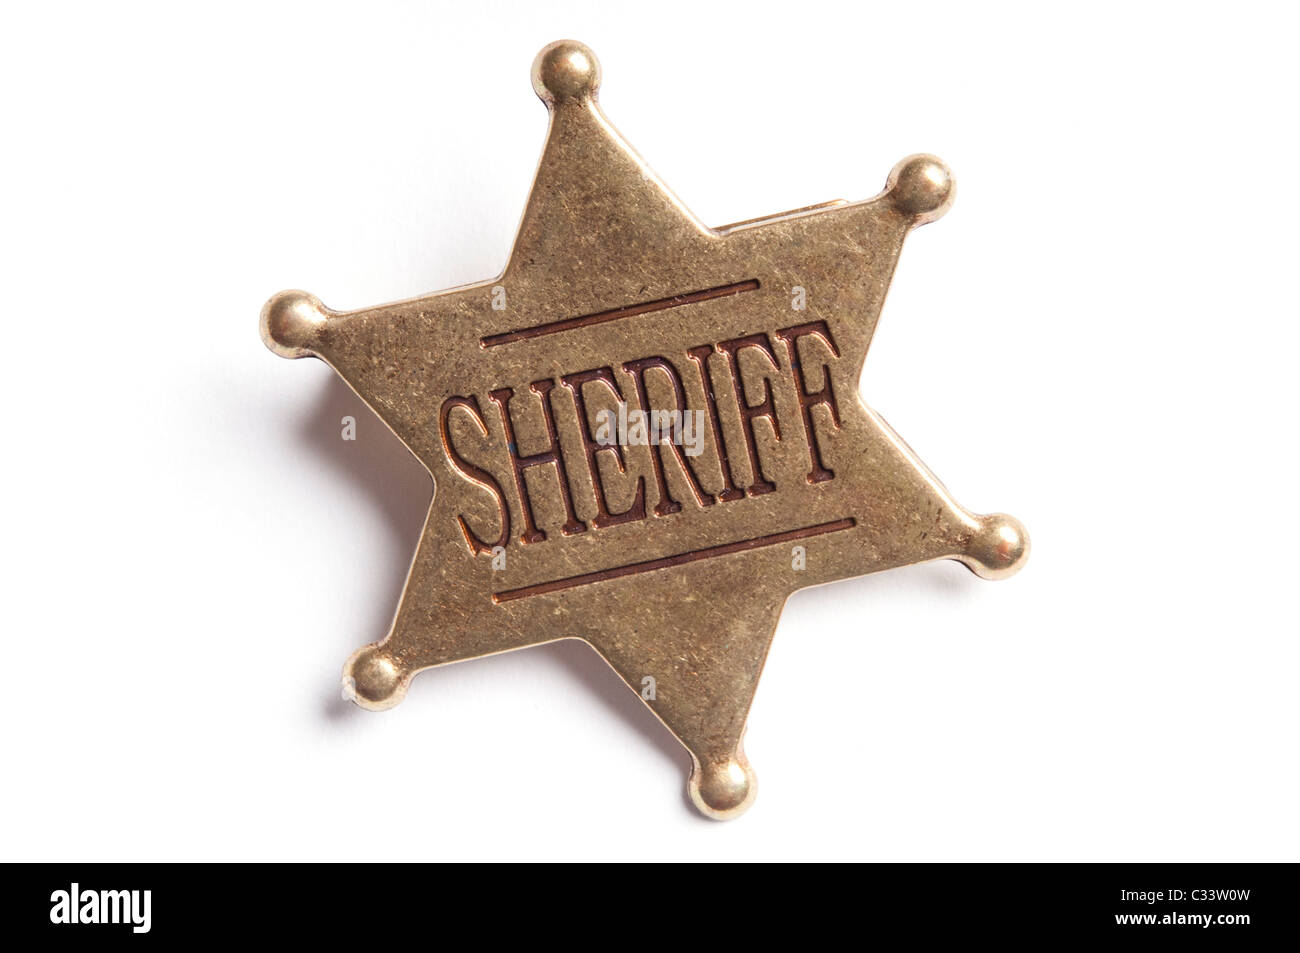 old-west sheriff badge Stock Photo